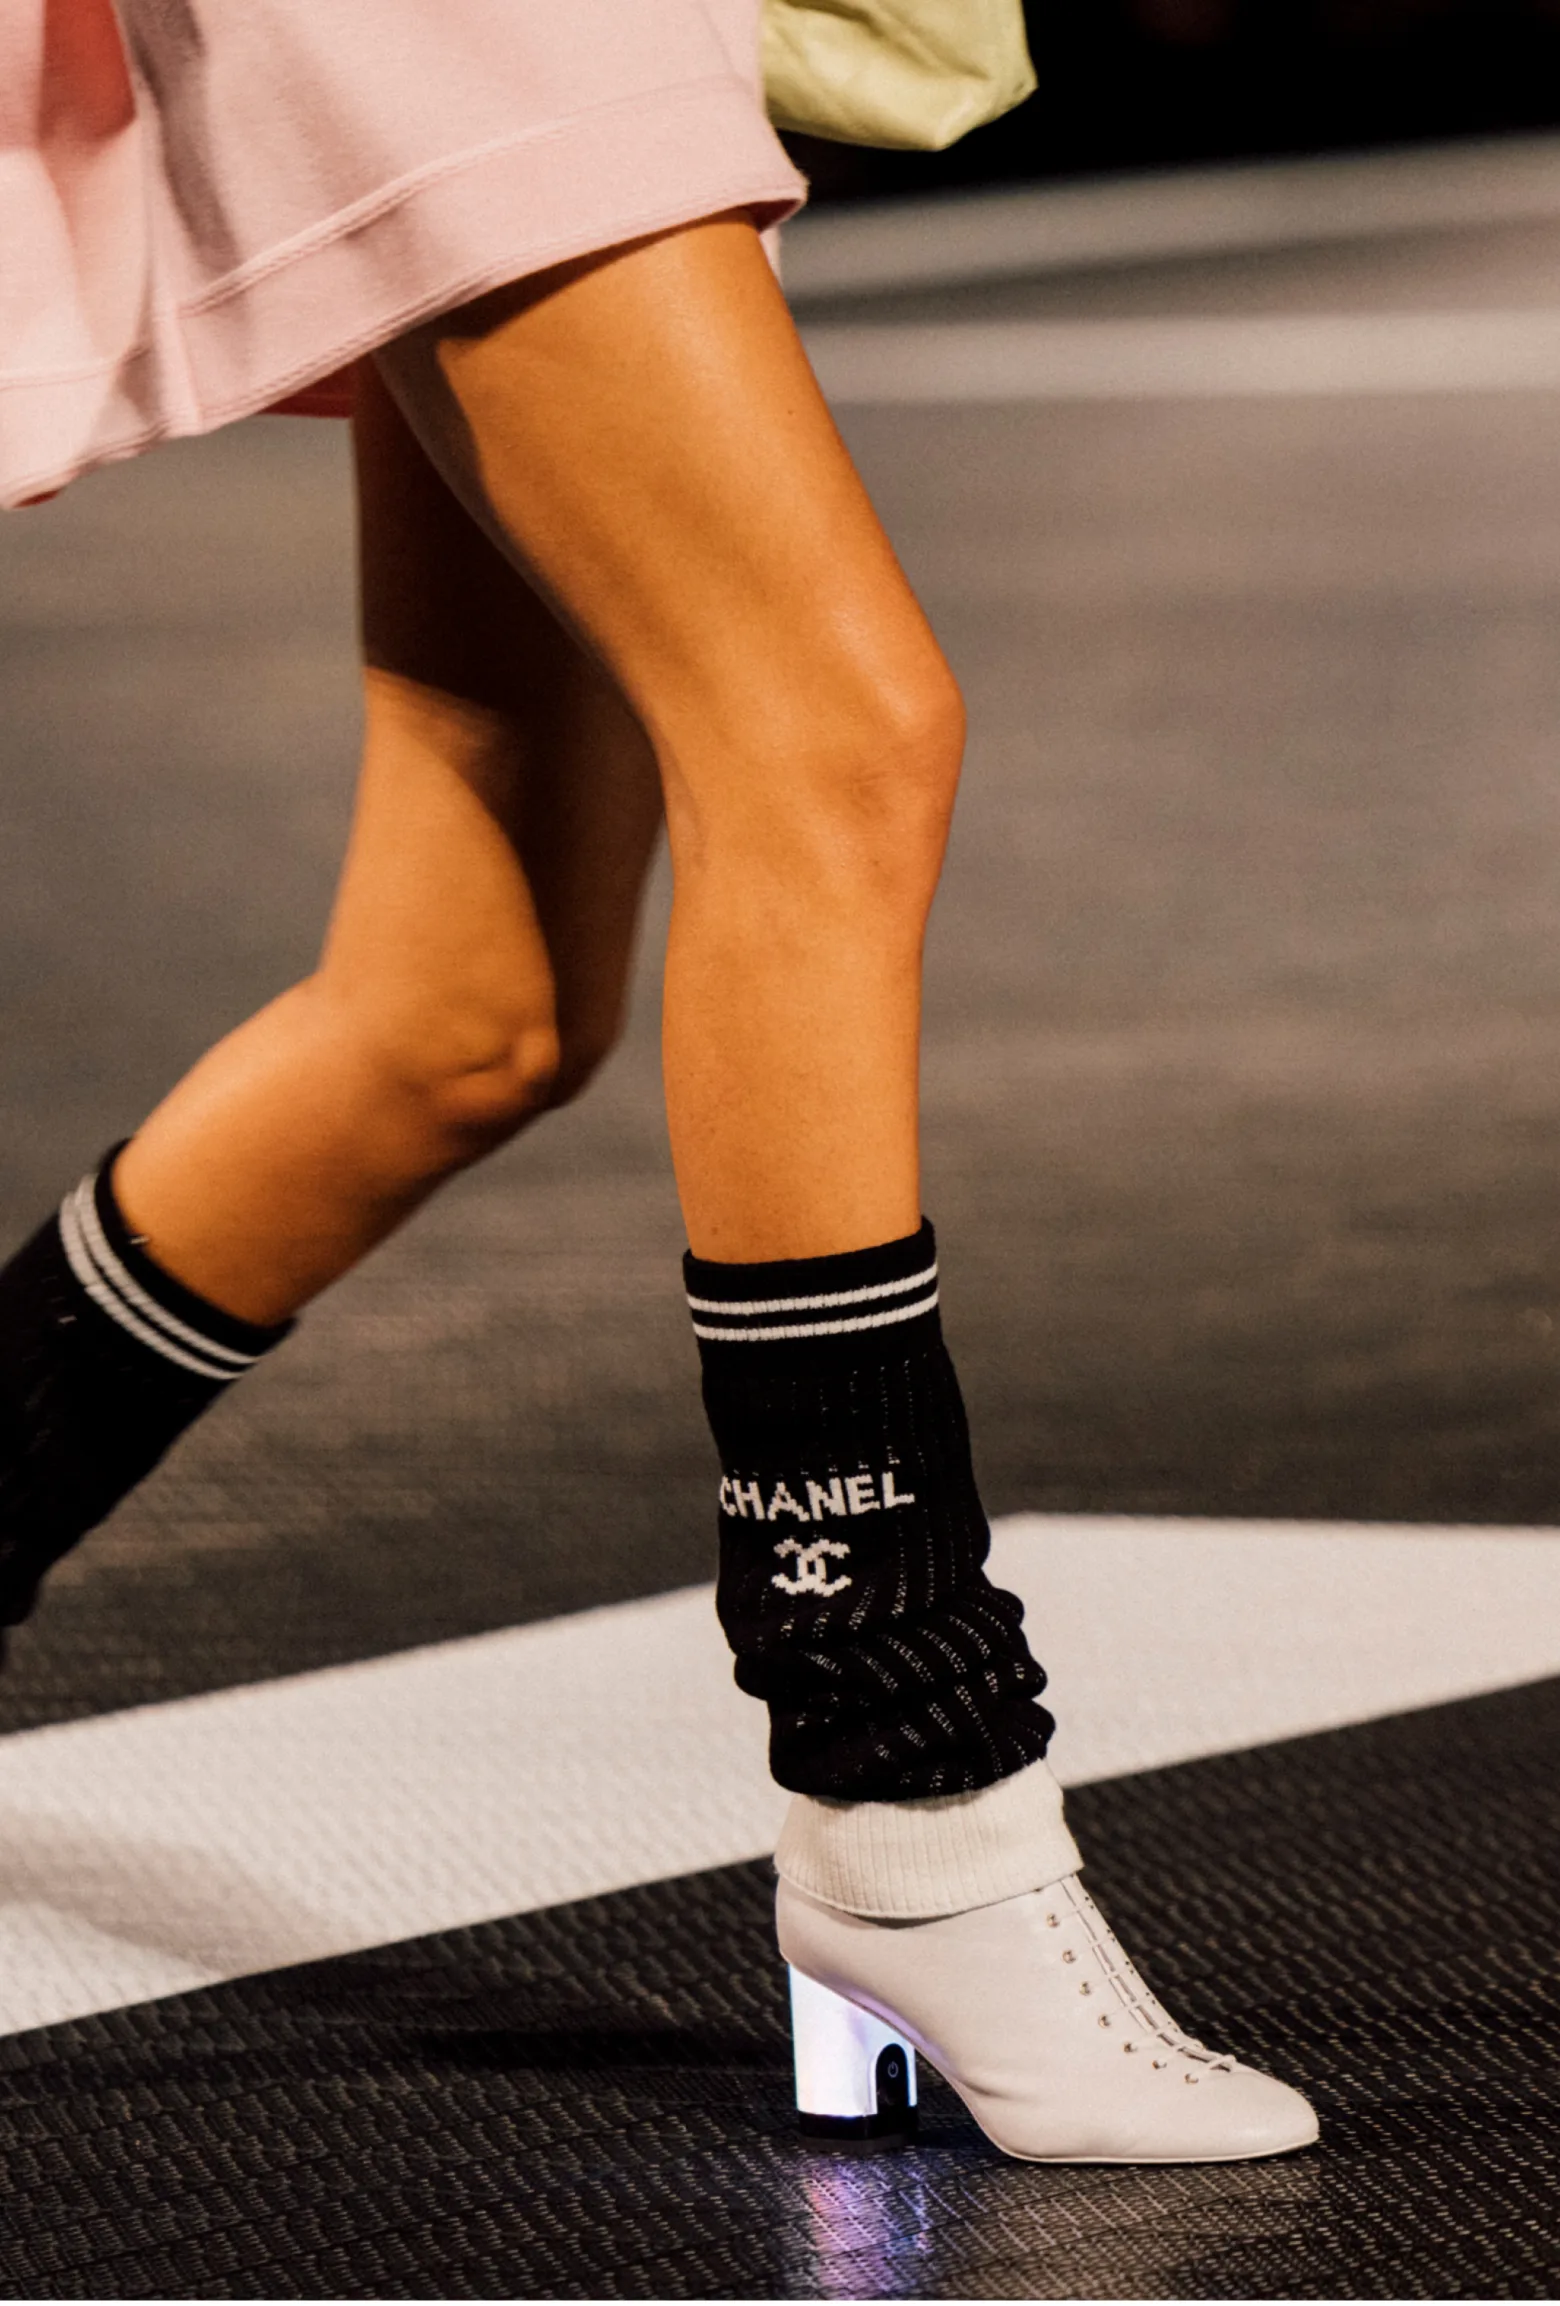 2023/2024 24C Chanel Fashion Runway Highlight - Leg warmers